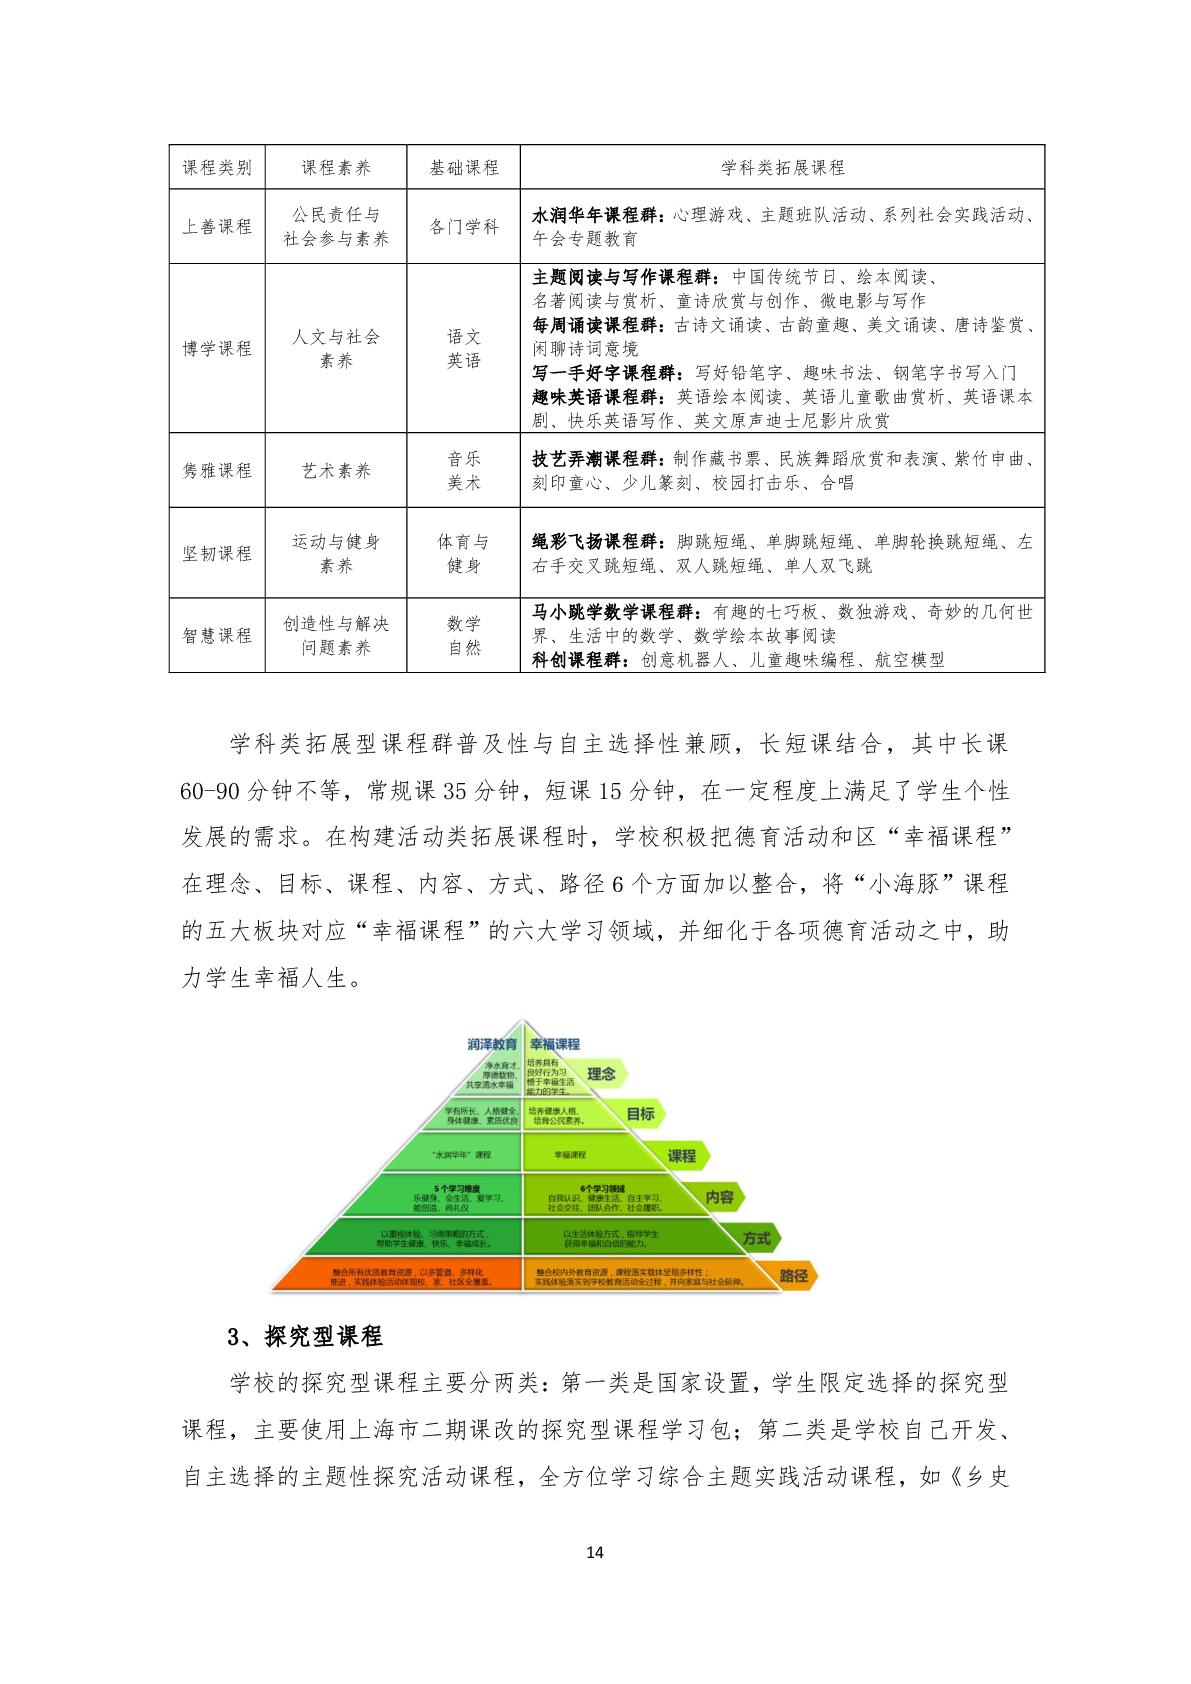 2.上海市嘉定区清水路小学2020学年度课程计划-014.jpg